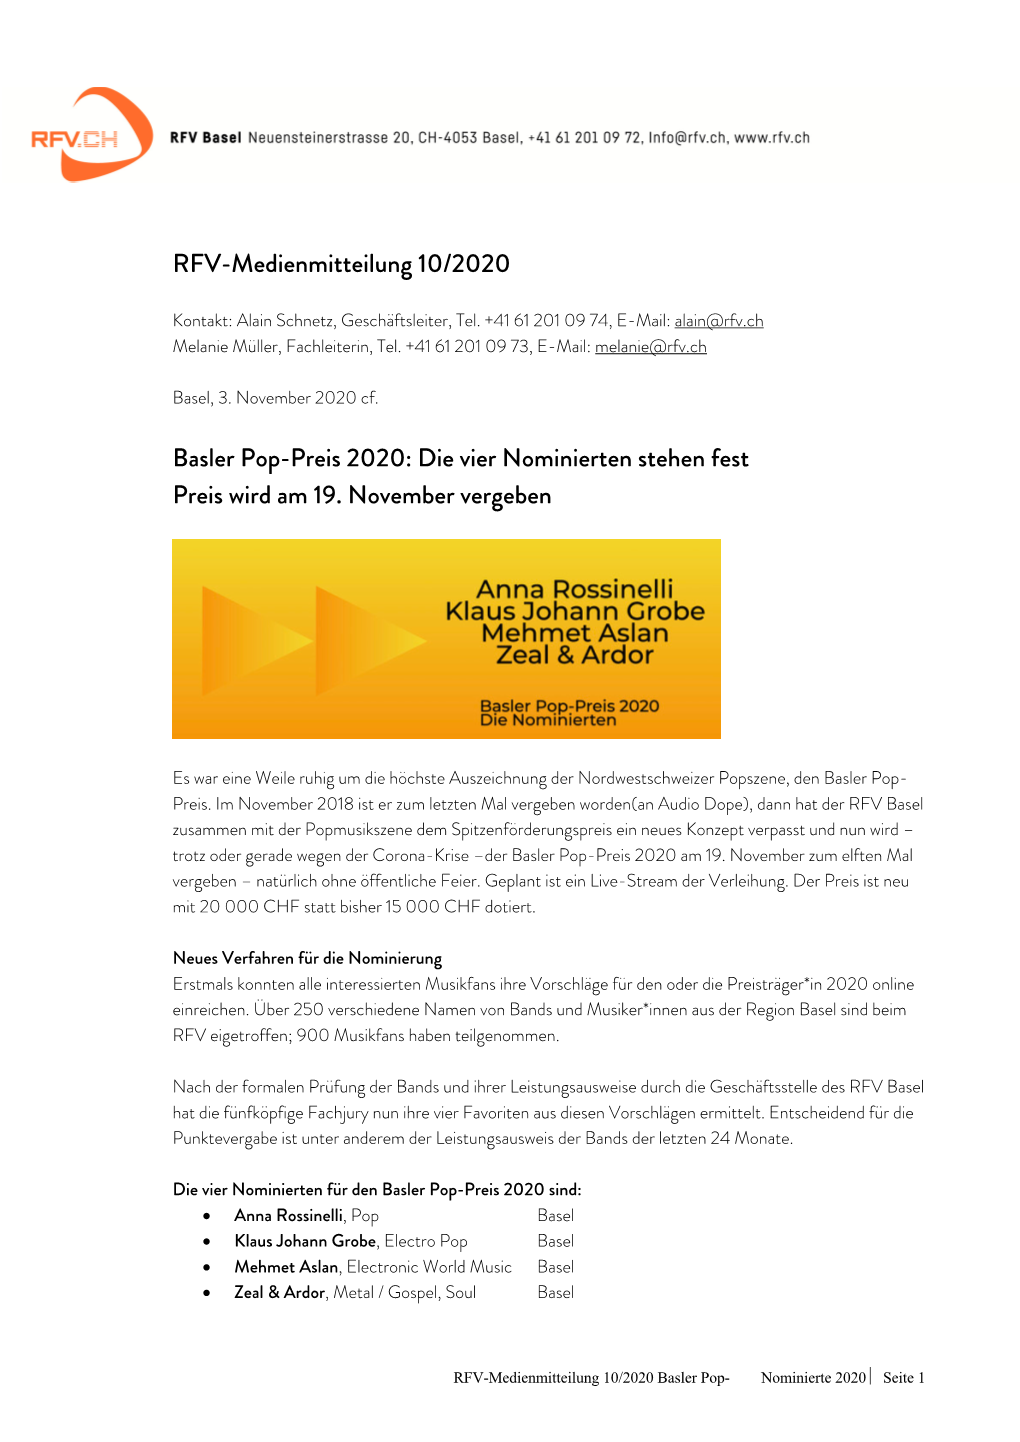 RFV Medienmitteilung 10 Basler Pop-Preis 2020 Nominierte